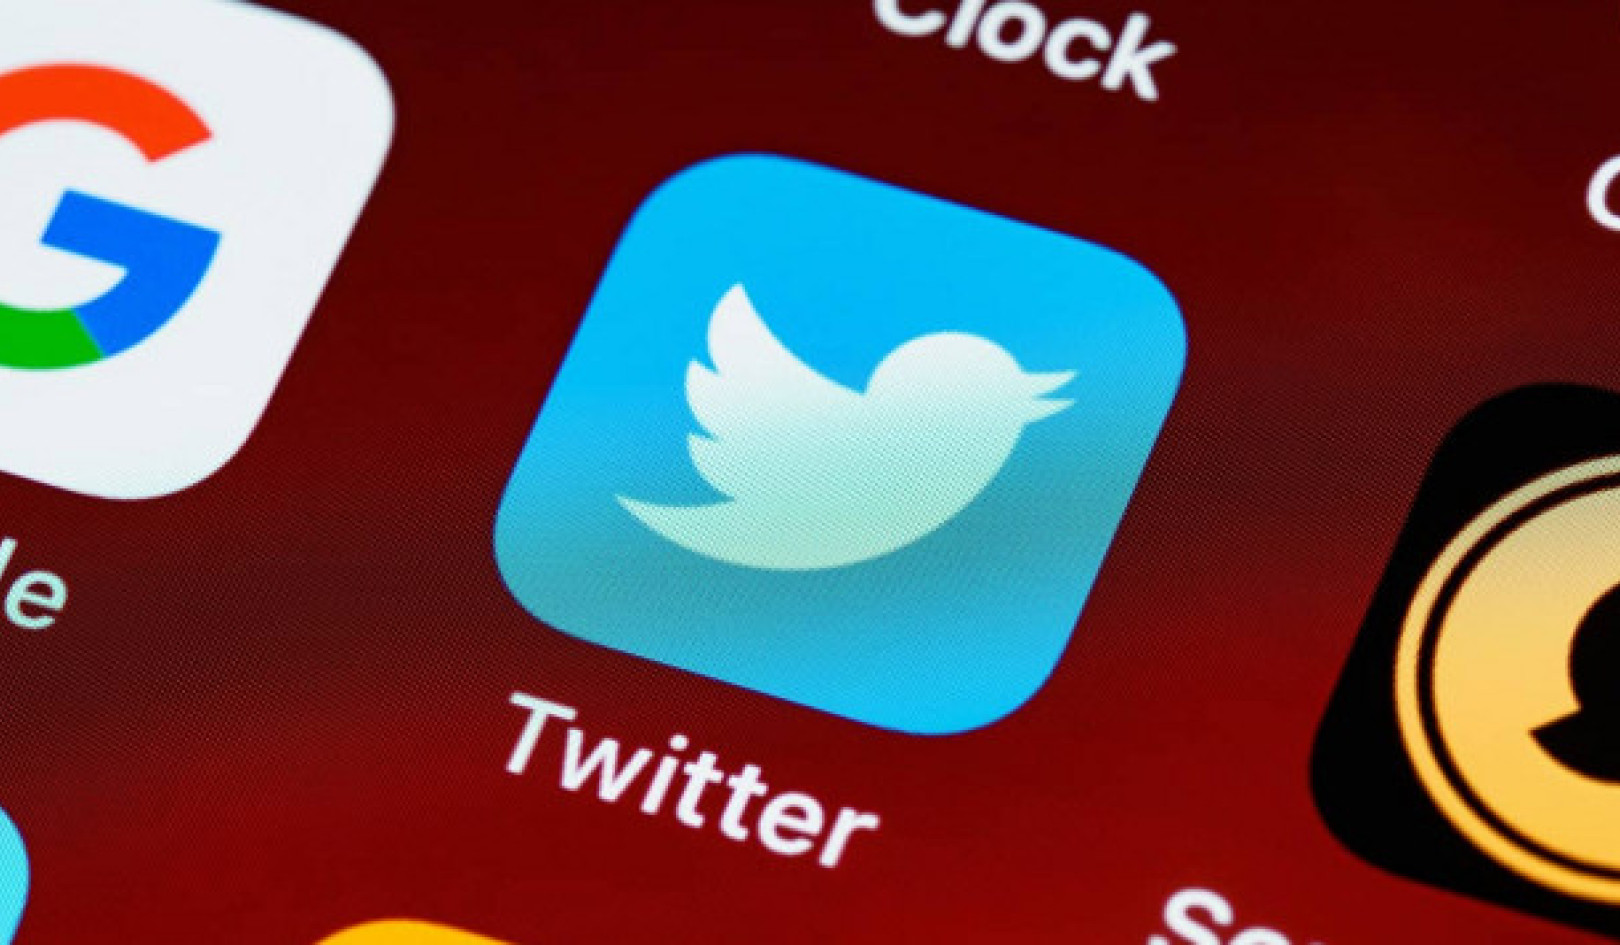 رهبران سیاسی در توییتر: روندهای متضاد در محتوای غیرقابل اعتماد